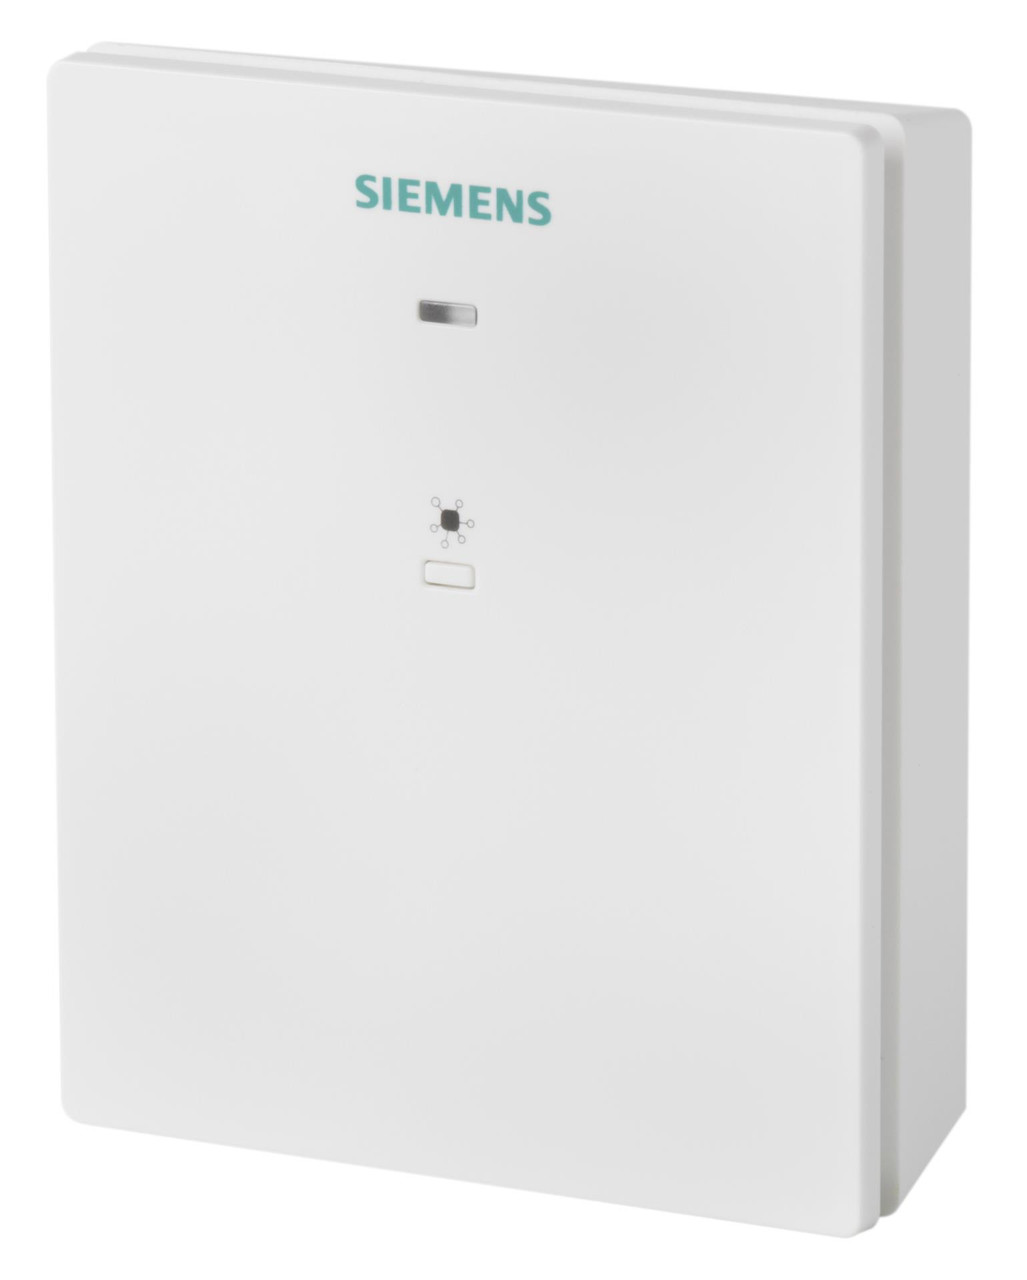 Siemens RCR114.1, S55772-T104